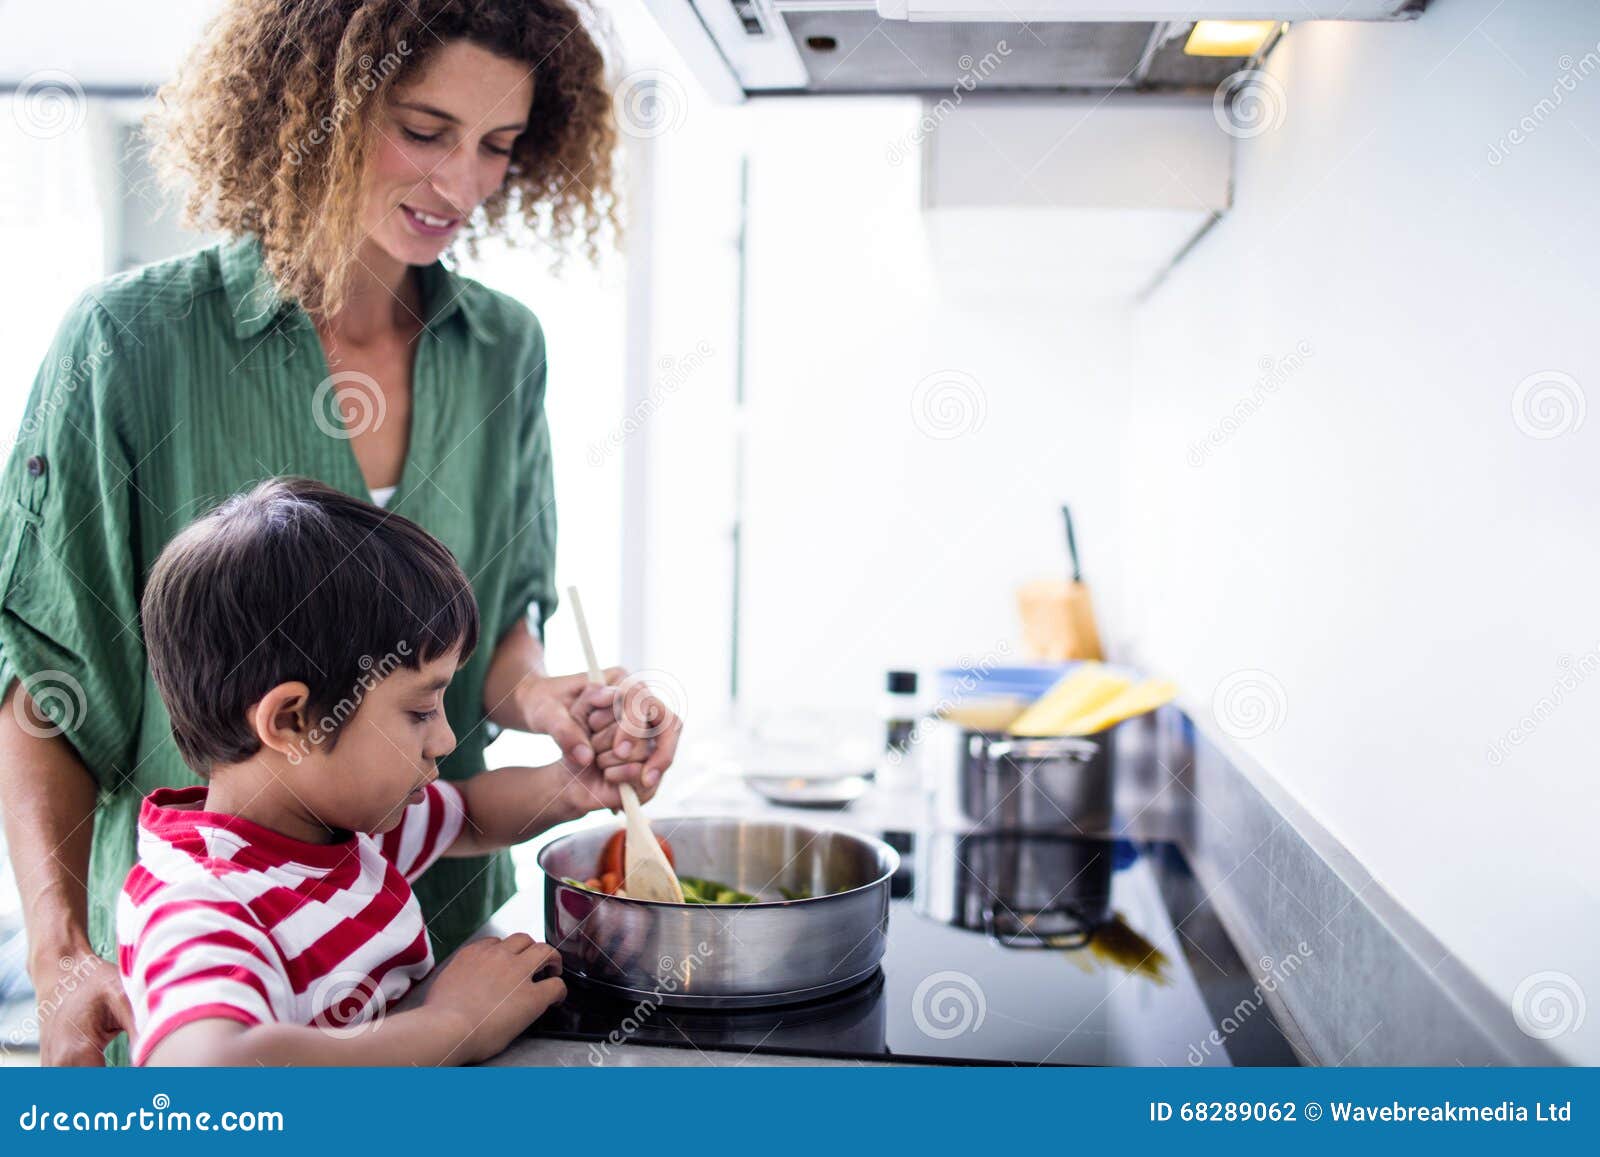 Маму на кухонном столе. Семья на кухне. Счастливая семья на кухне. Мама с ребенком на кухне. Мать и сын готовят.